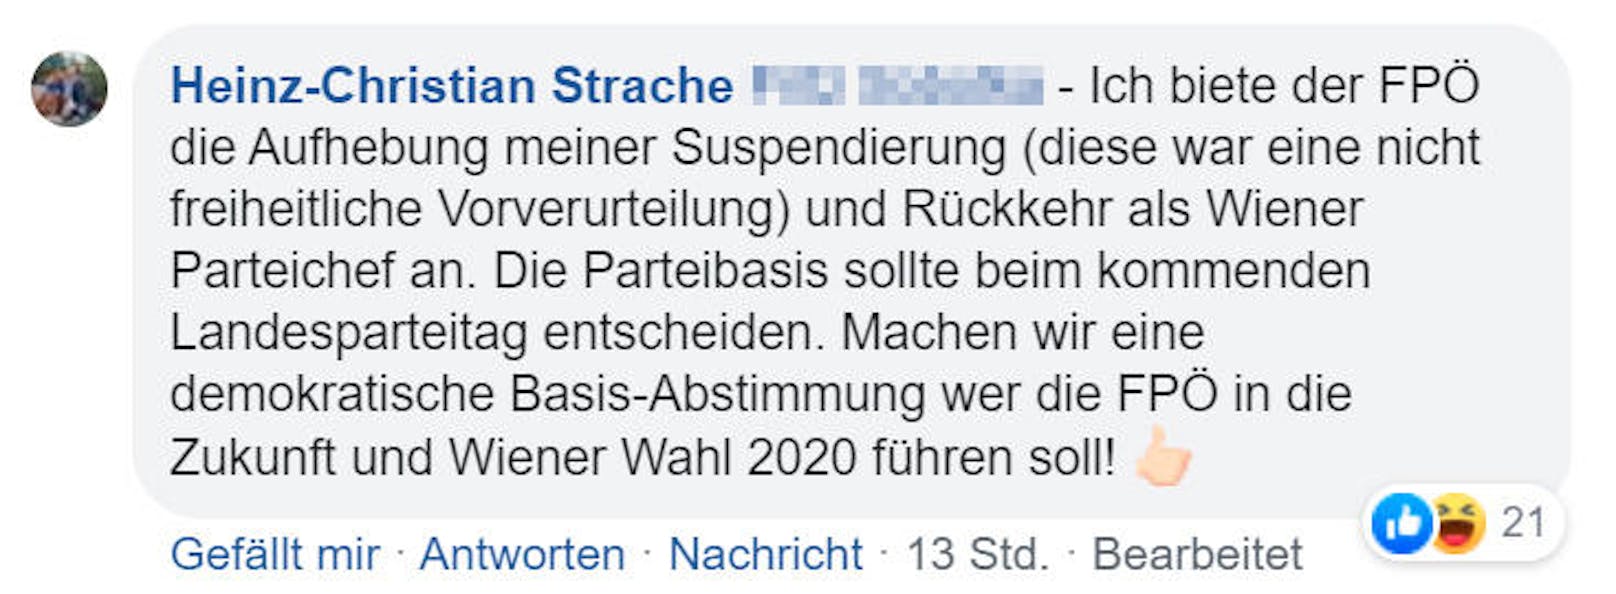 ... schrieb Strache als Kommentar auf der "Heute.at"-Facebook-Seite: "Biete meine Rückkehr als Wiener Parteichef an".